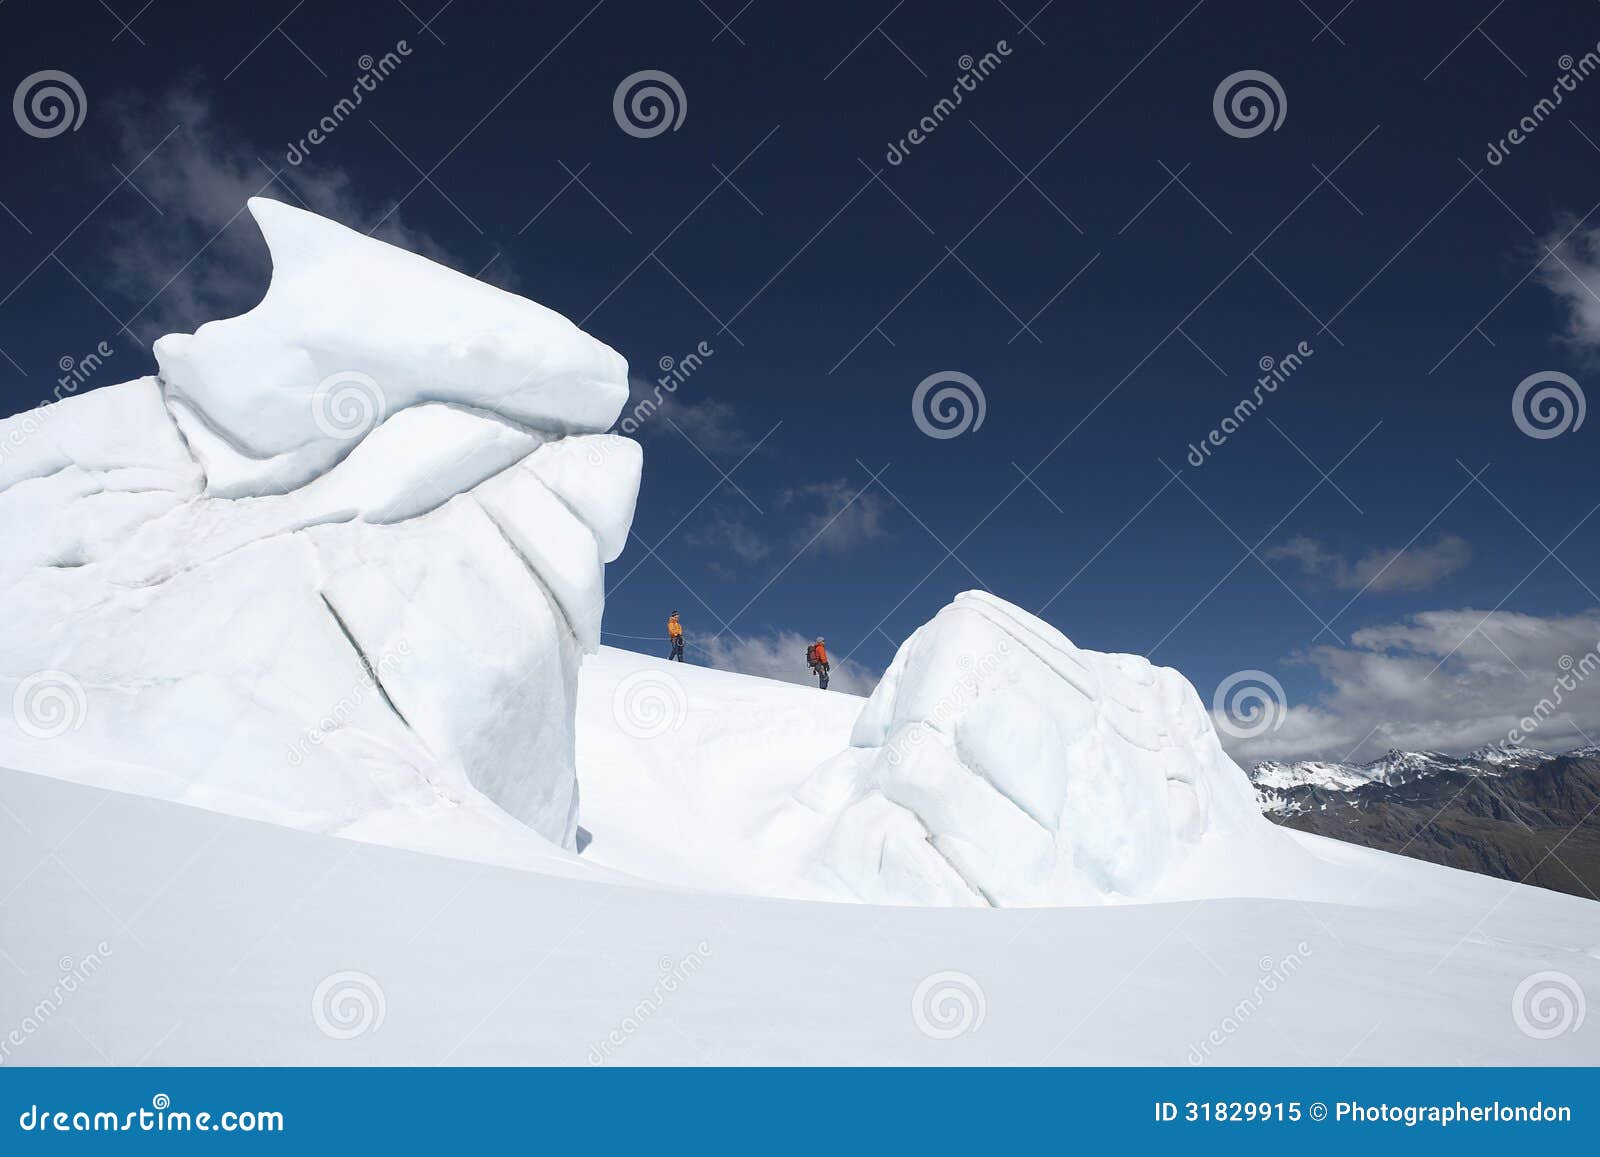 Bergsbestigare som går förbi isbildande. Sidosikt av två fotvandrare som går förbi isbildande på ett avstånd i snöig berg